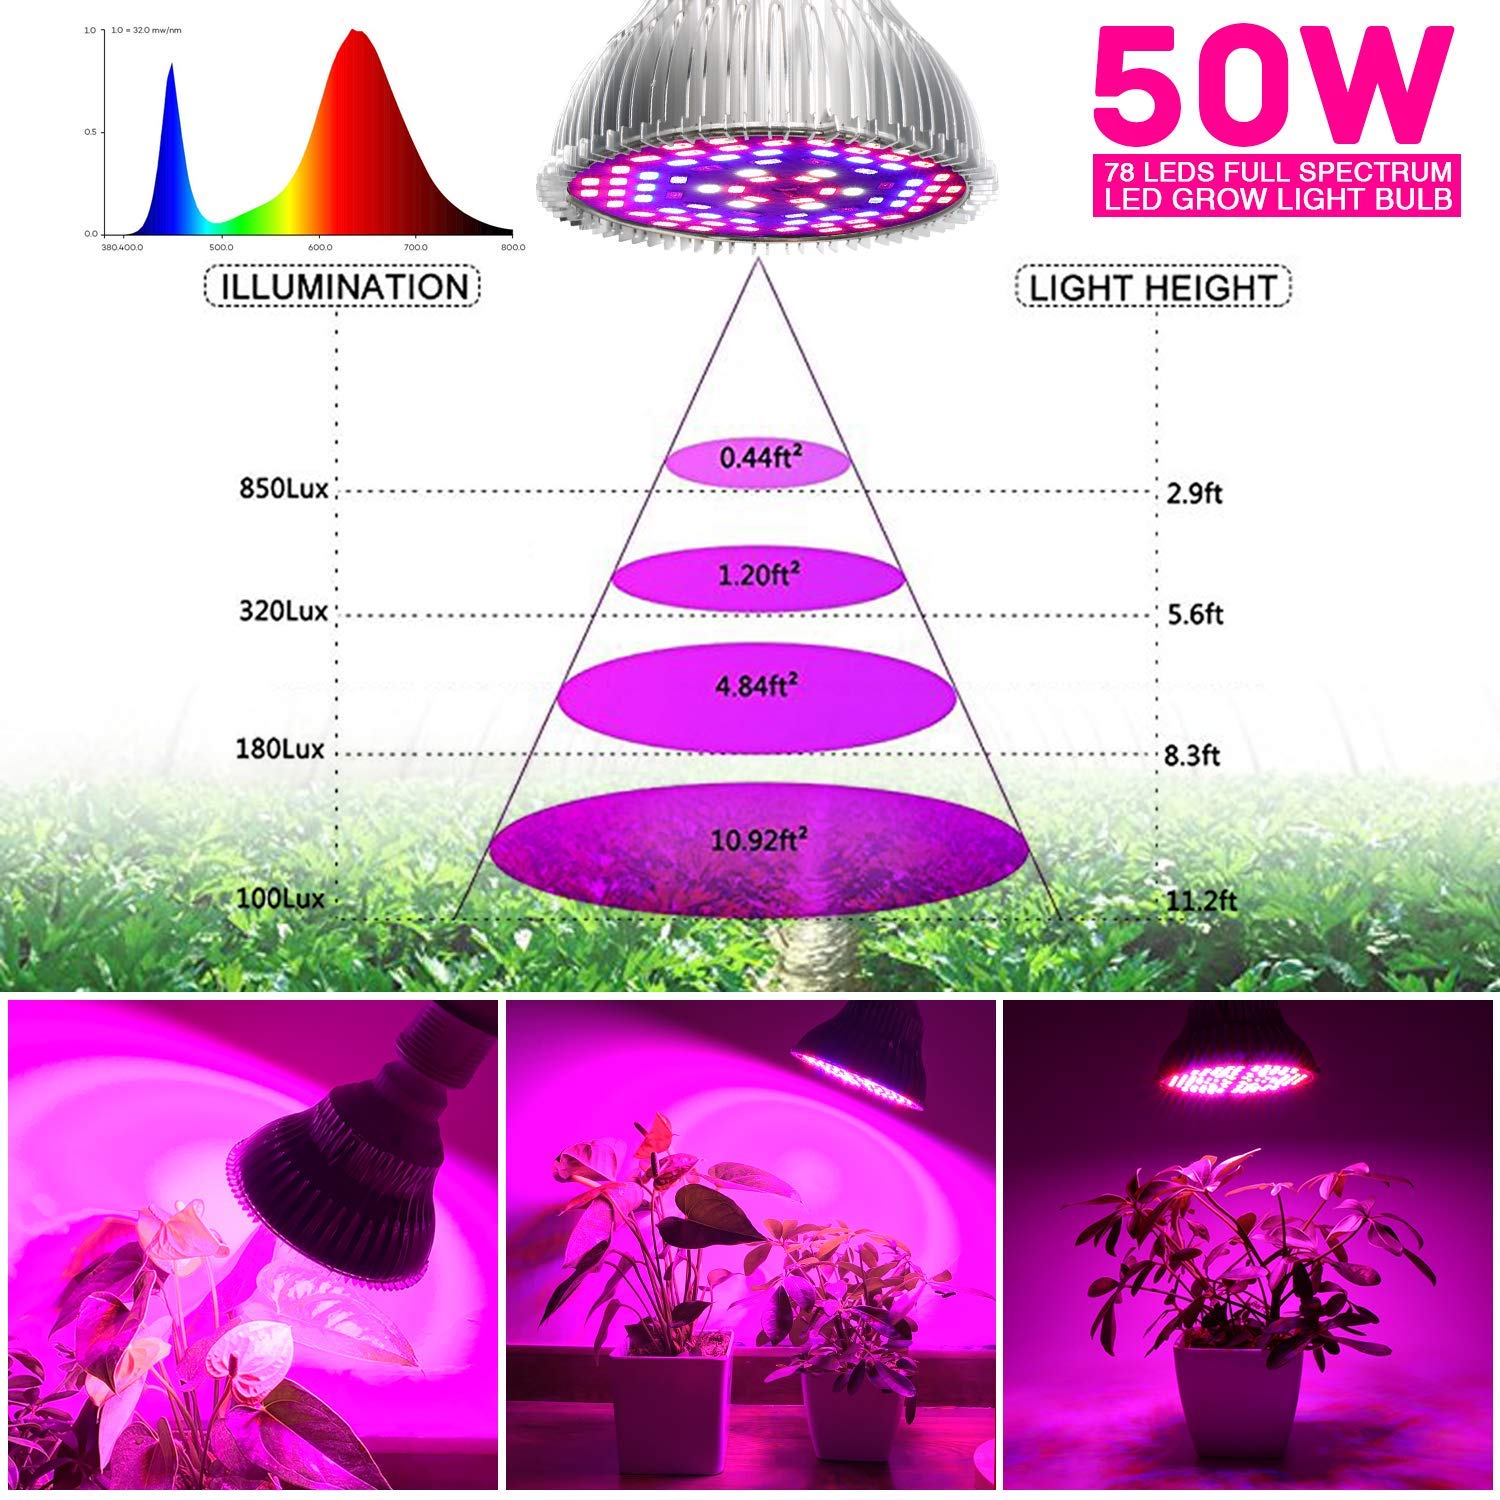 Led grow pære 50w indendørs planter pærer fuld spektrum lampe grøntsager blomster til hydroponics drivhuse havearbejde